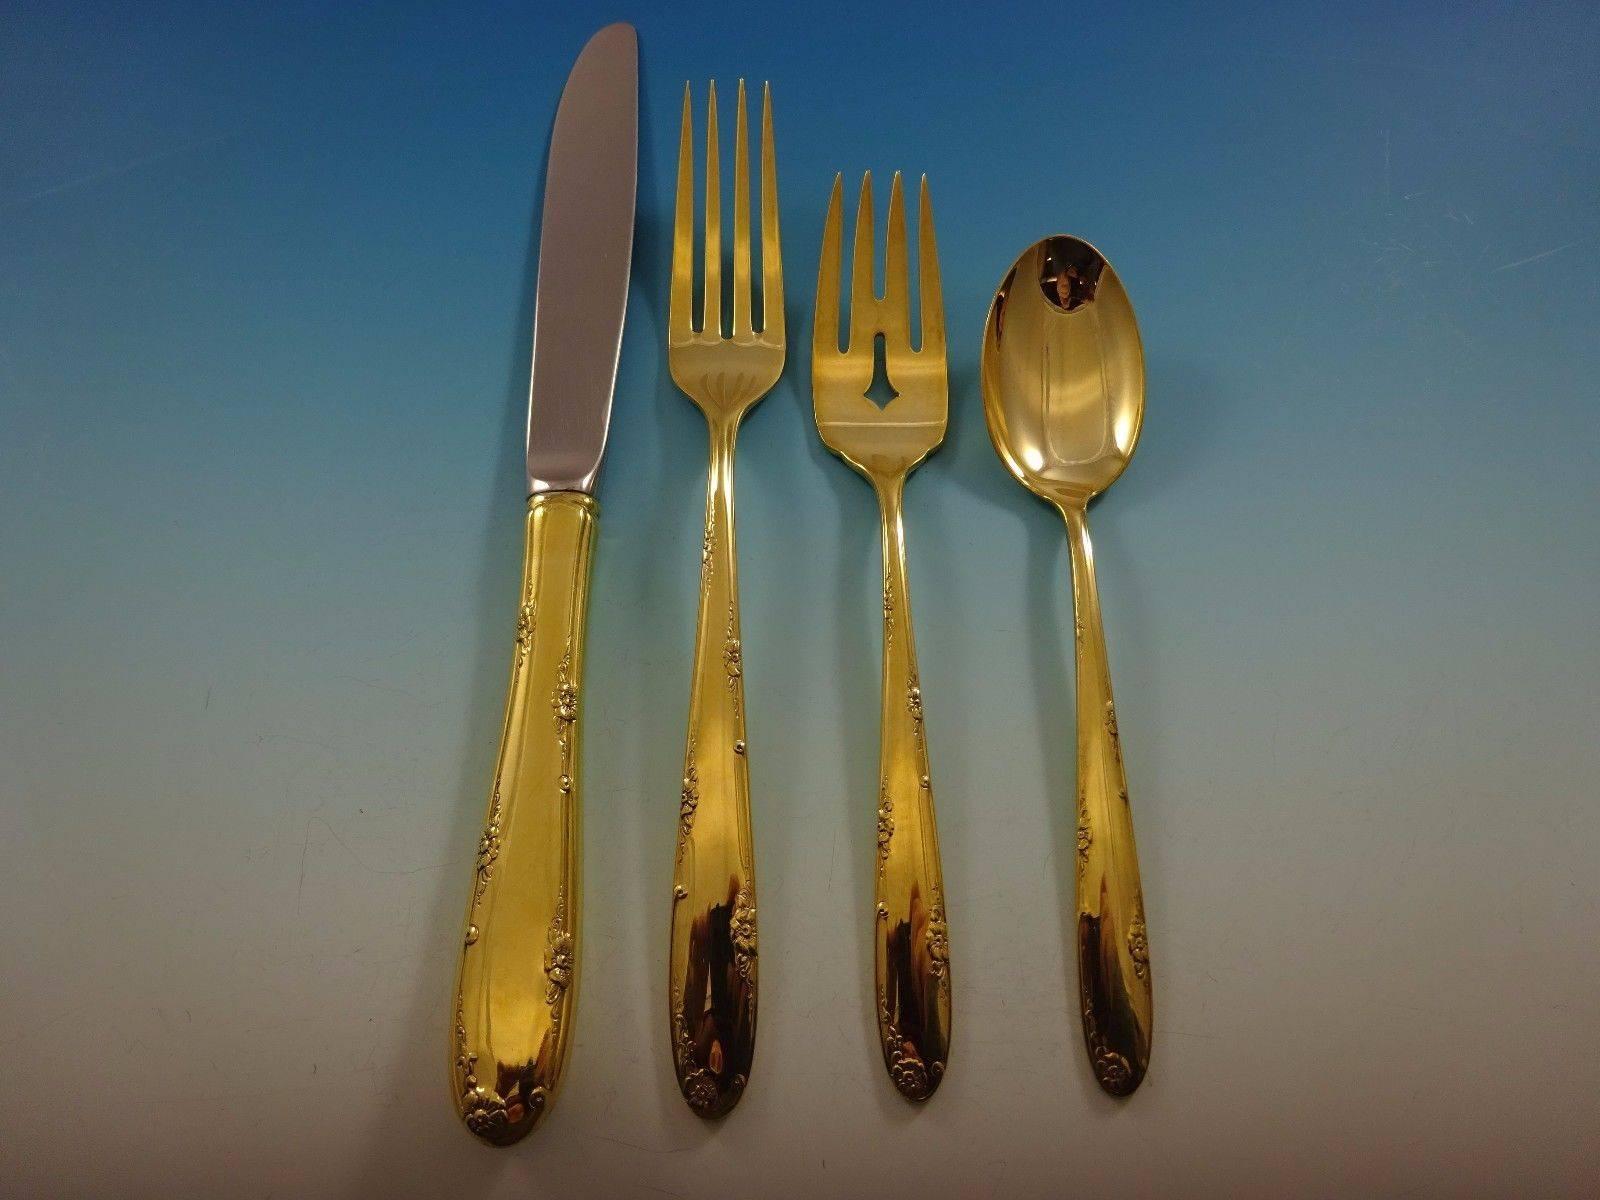 Madeira Gold by Towle Besteck aus Sterlingsilber, 32 Teile. Dieses Set ist vergoldet (komplett goldgewaschen) und enthält: 

Acht Messer, 9